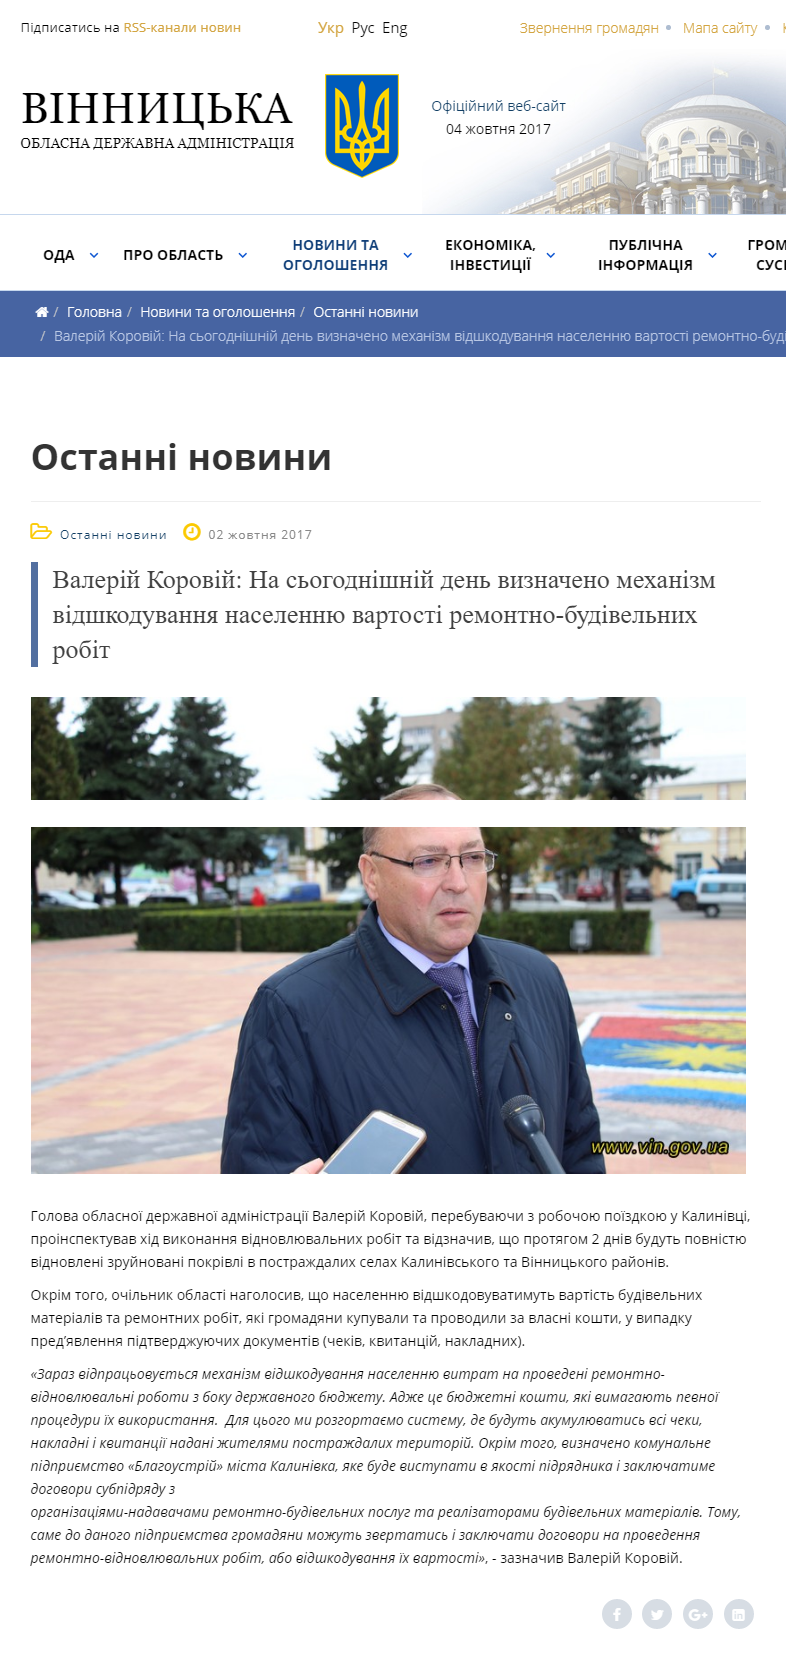 http://www.vin.gov.ua/news/ostanni-novyny/5927-valerii-korovii-na-sohodnishnii-den-vyznacheno-mekhanizm-vidshkoduvannia-naselenniu-vartosti-remontno-budivelnykh-robit